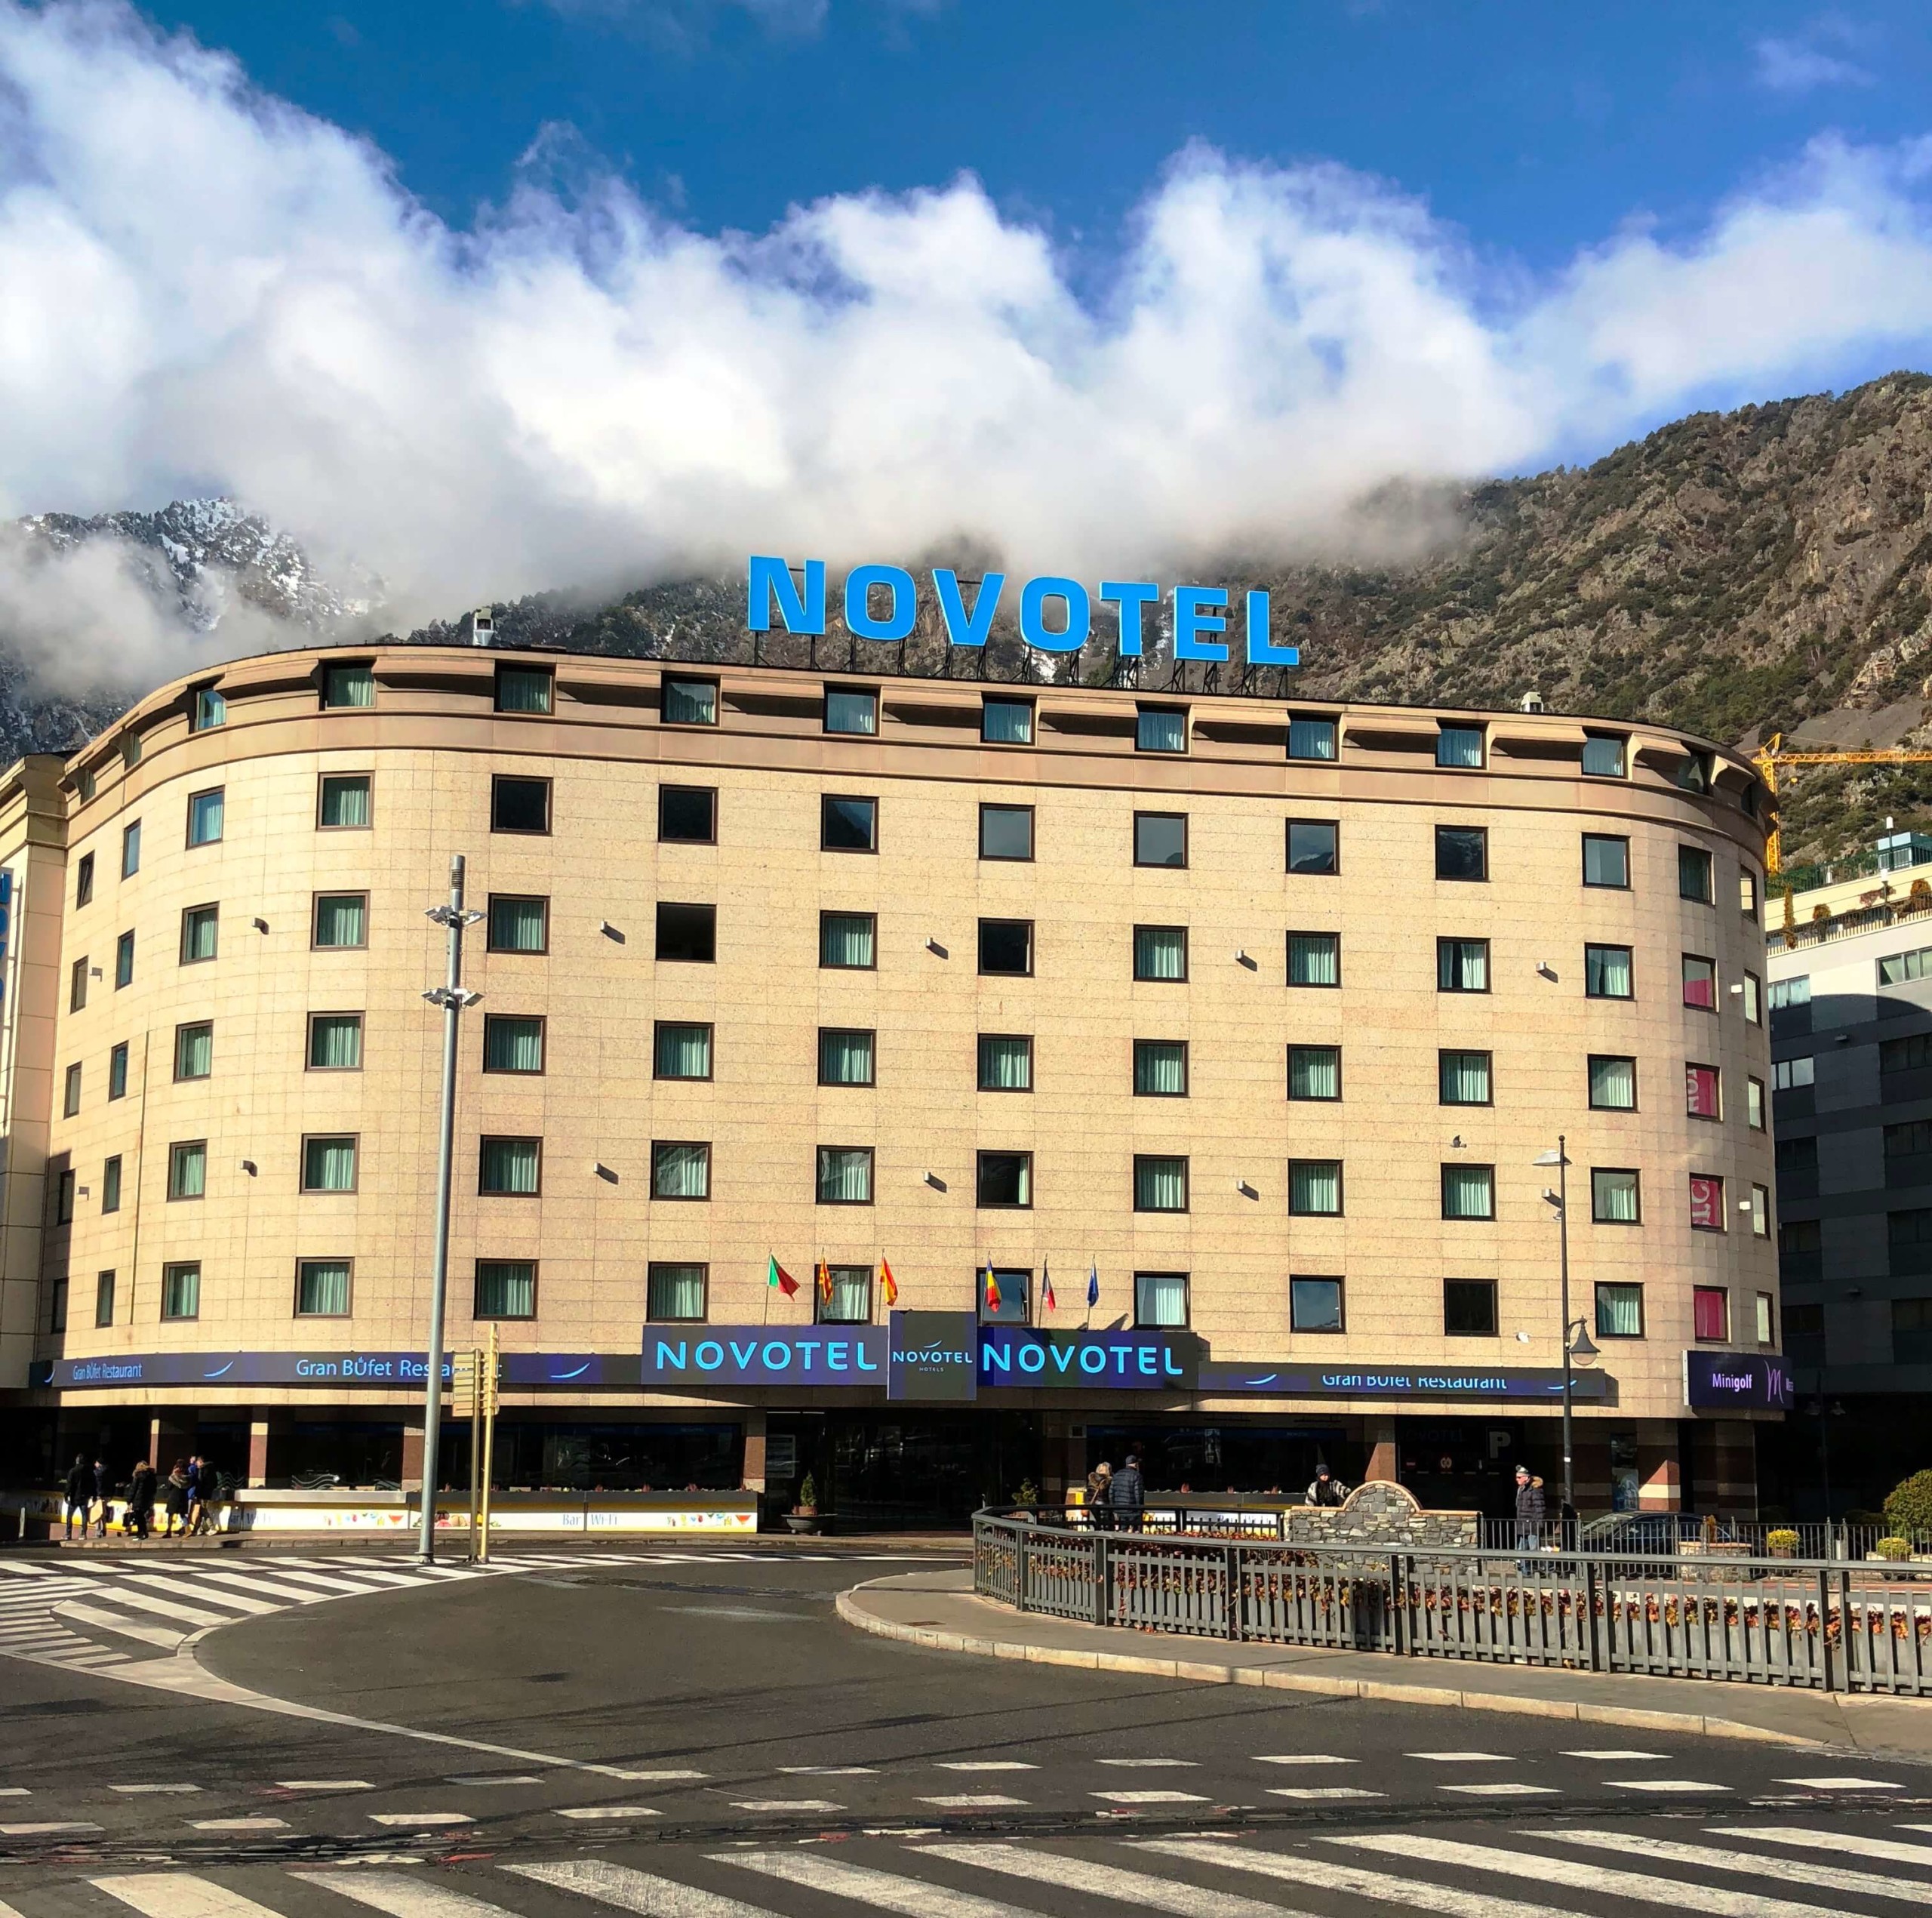 NOVOTEL ANDORRA - Andorra la Vella